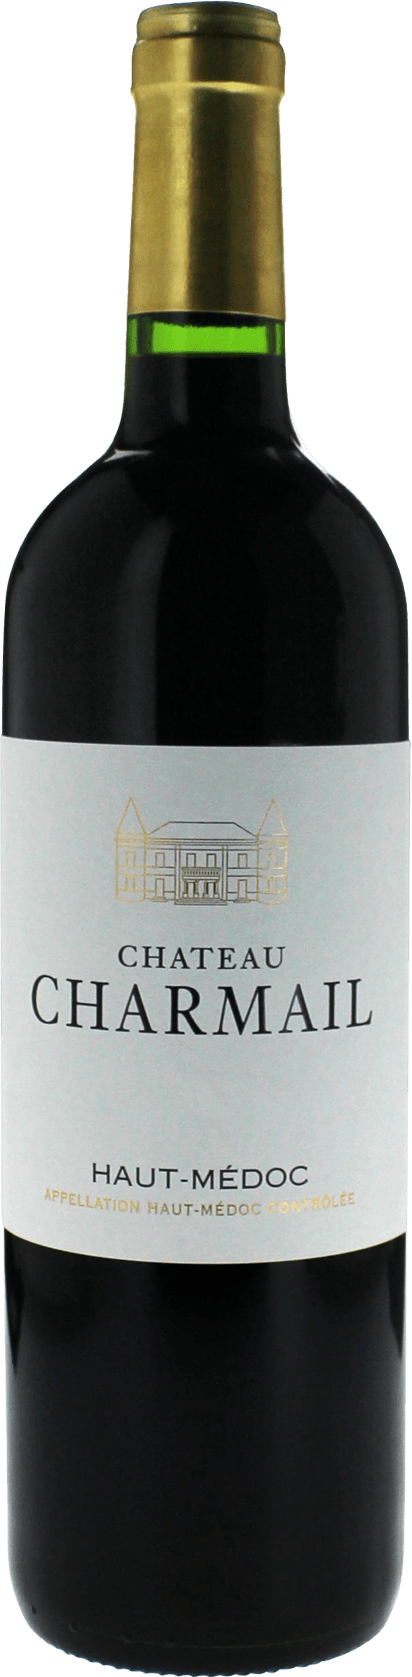 Charmail 2015  Haut-Mdoc, Bordeaux rouge